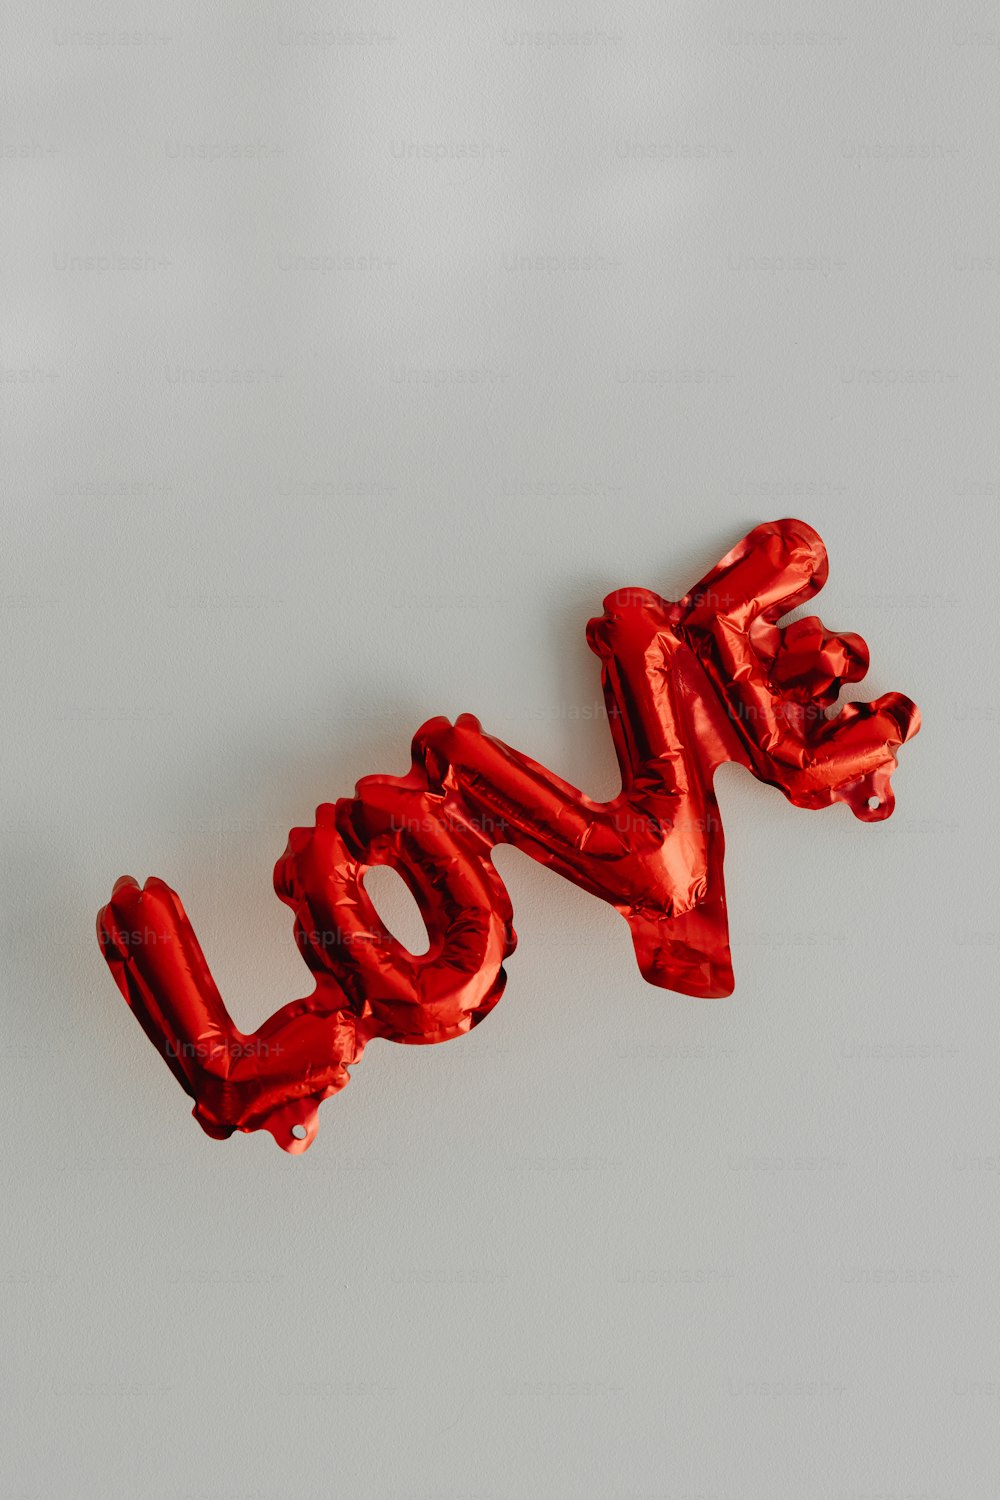 Le mot amour épelé à partir de ballons en aluminium rouge